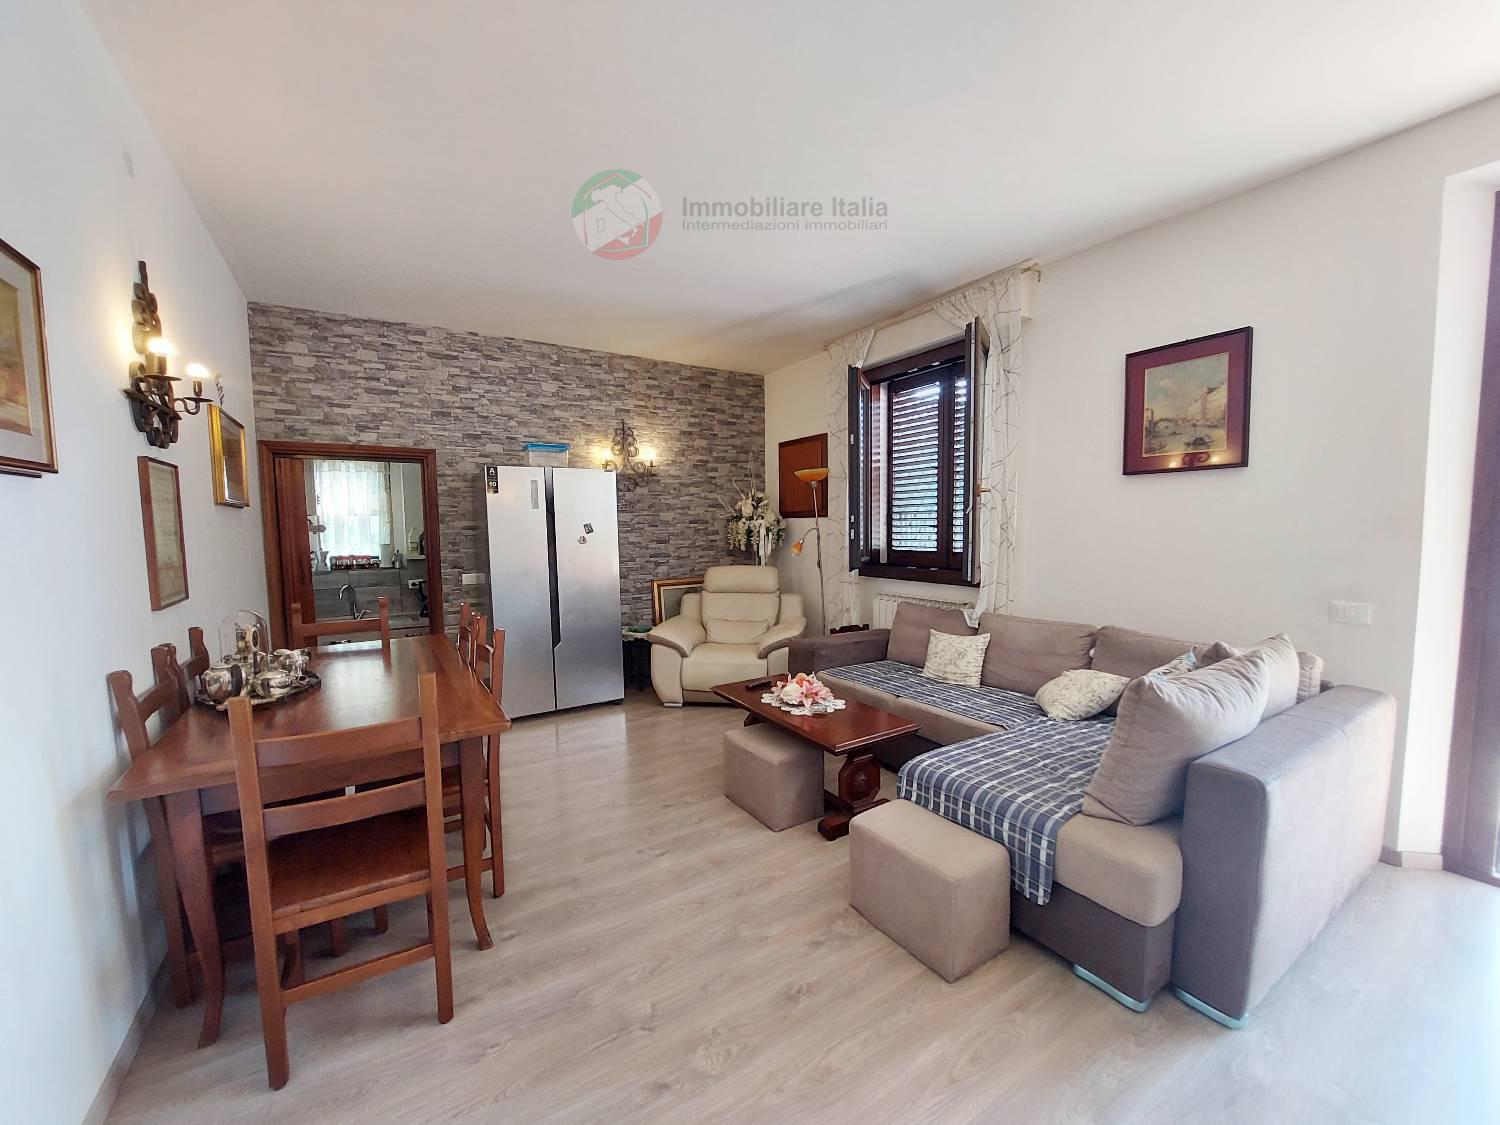 Appartamento in vendita a San Giovanni in Marignano, 4 locali, prezzo € 220.000 | PortaleAgenzieImmobiliari.it